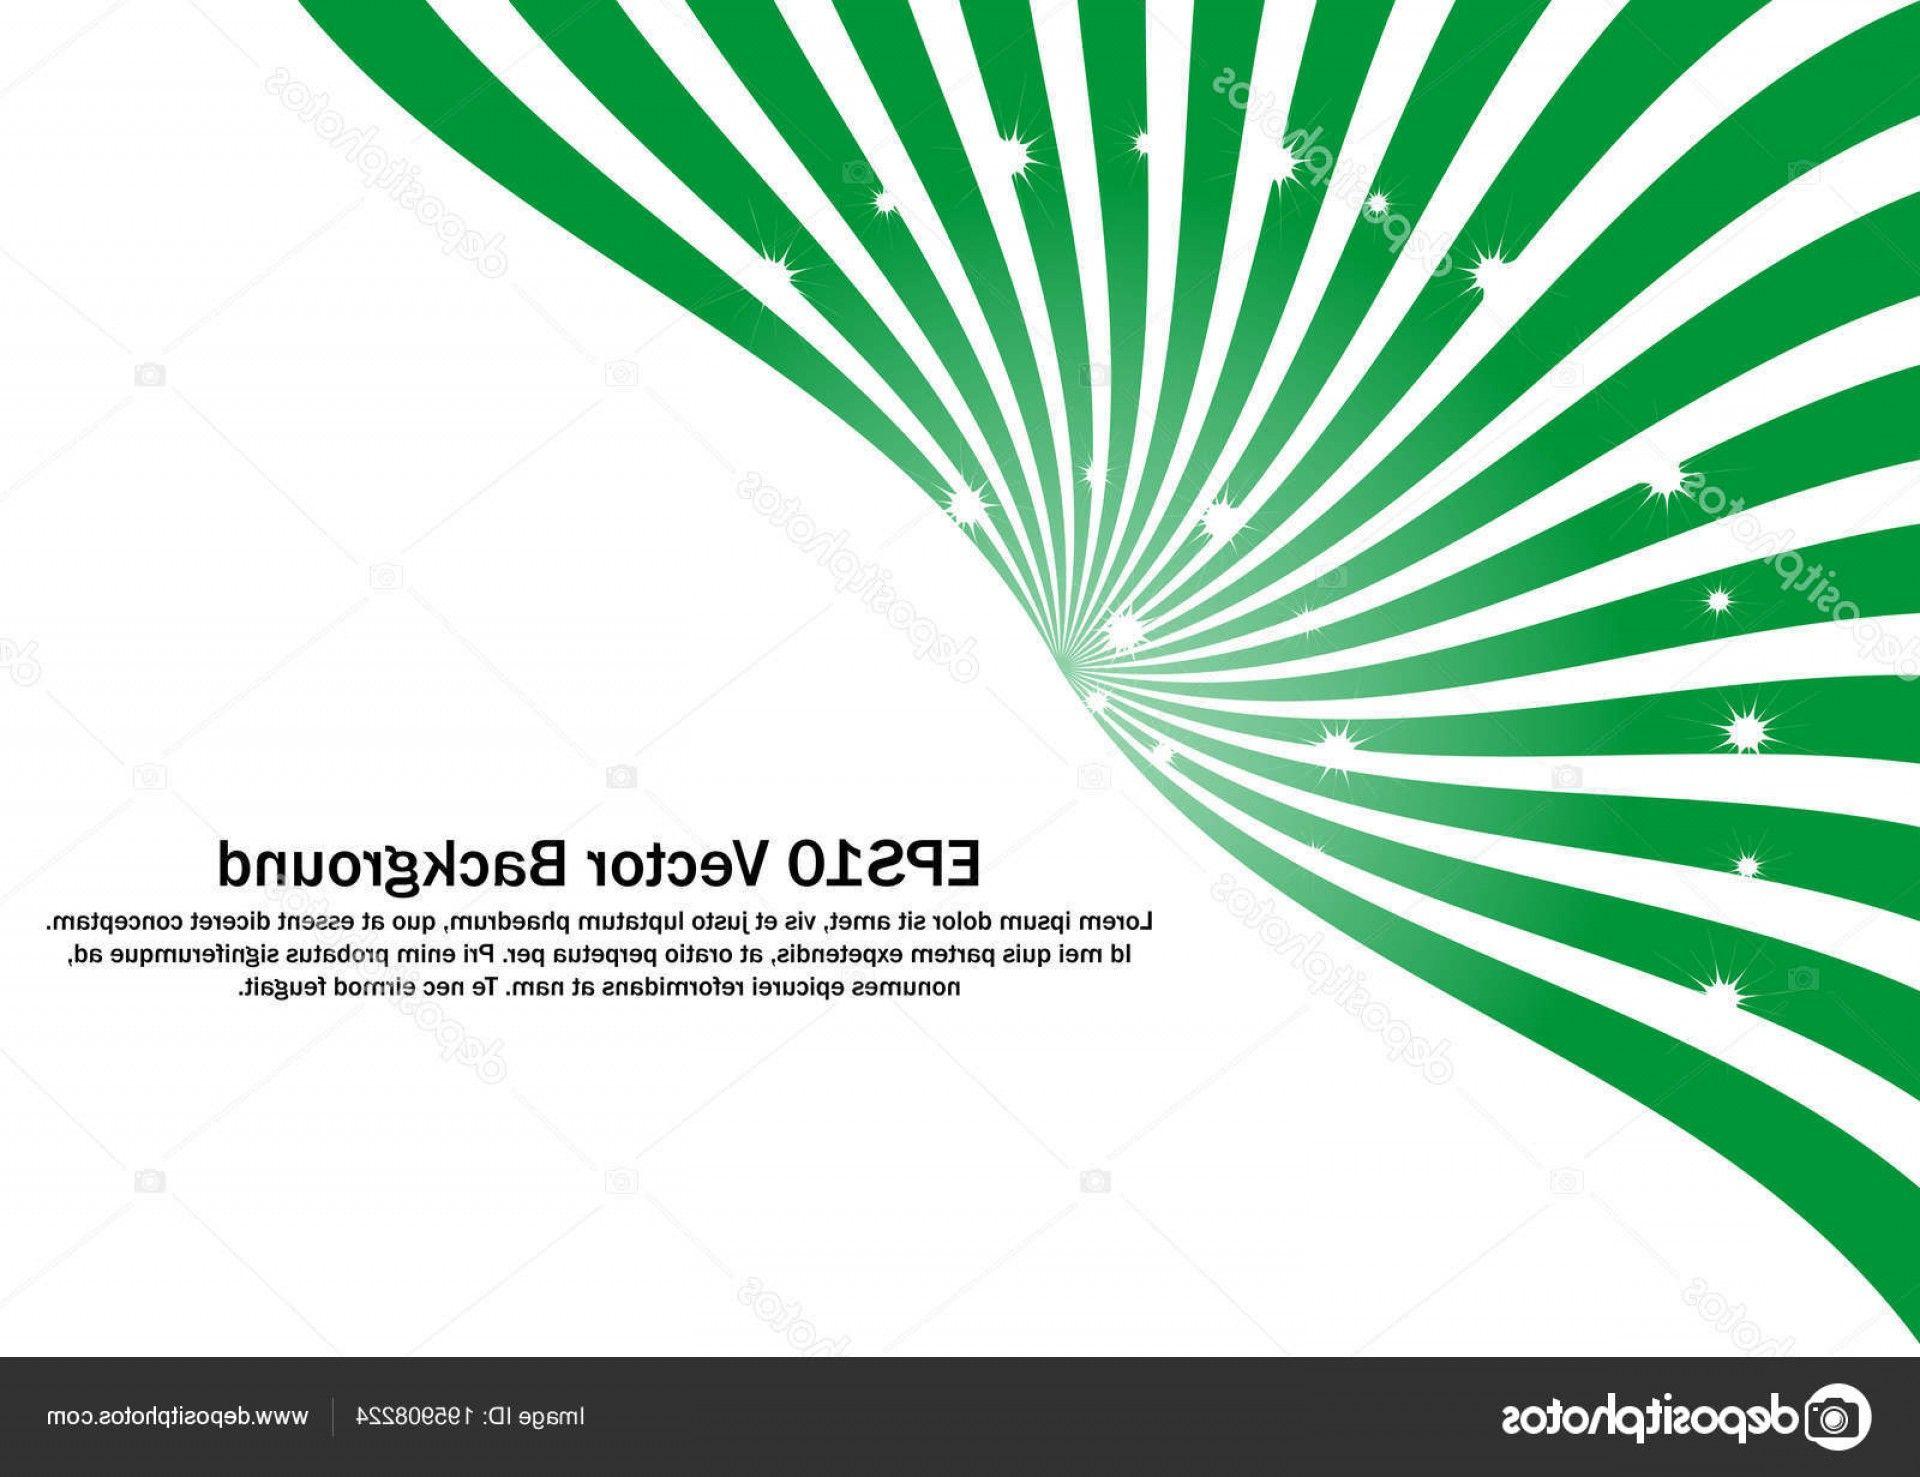 Green and White Swirl Logo - Stock Illustration Green White Swirl Strips Vector